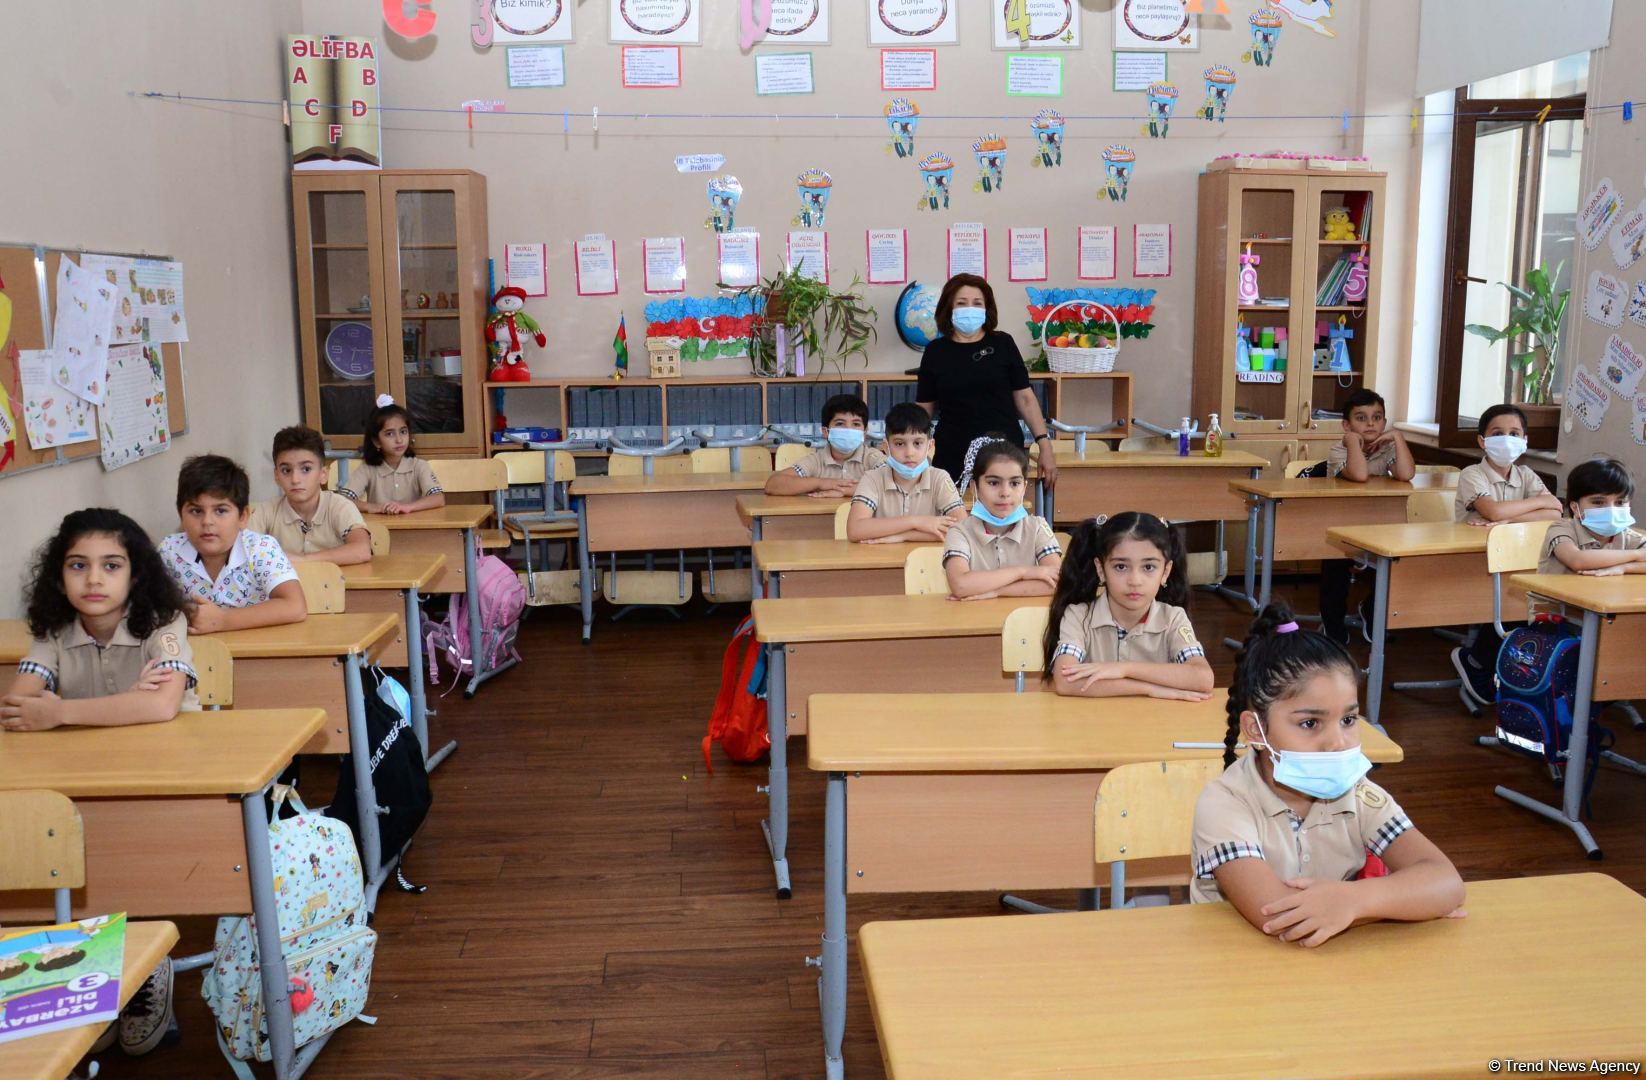 В Азербайджане за 3 дня на дистанционное обучение перешла 61 школа - министр